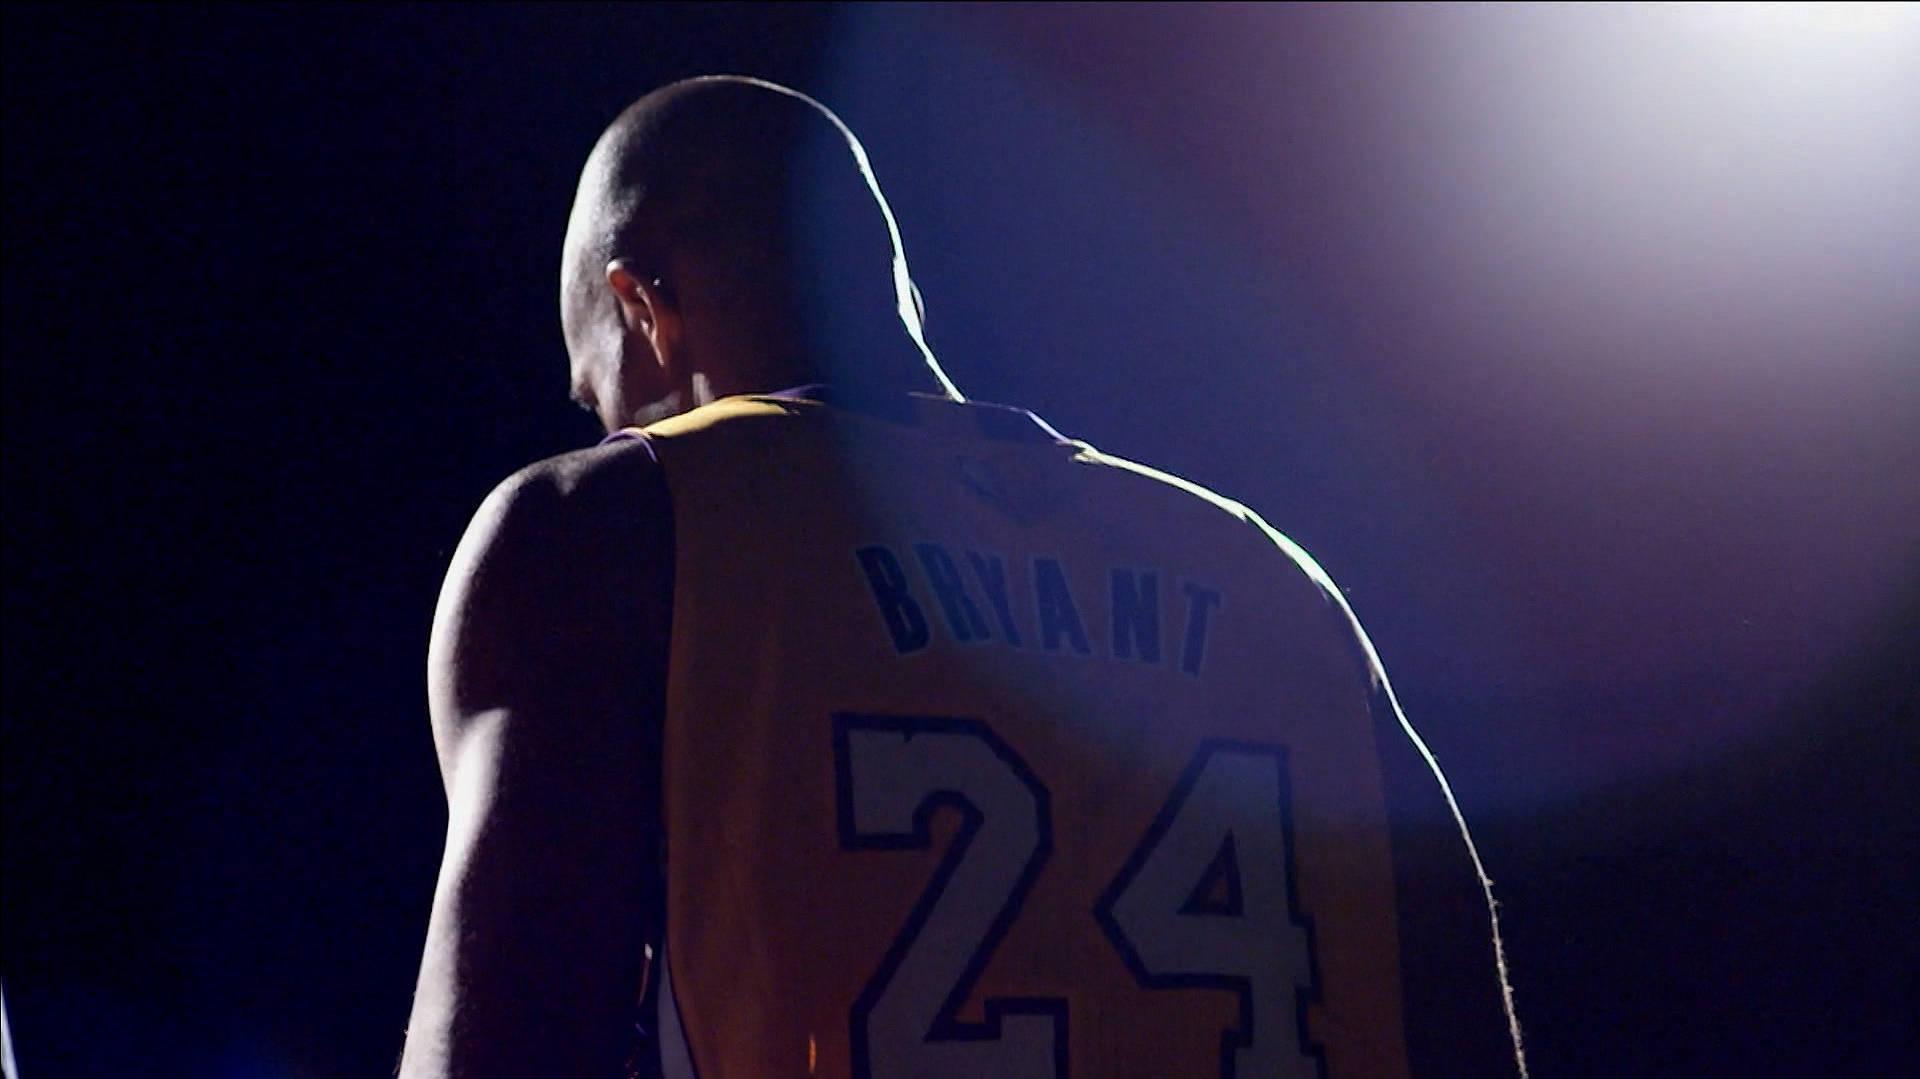 Kobe Bryant Shines In The Spotlight Wallpaper